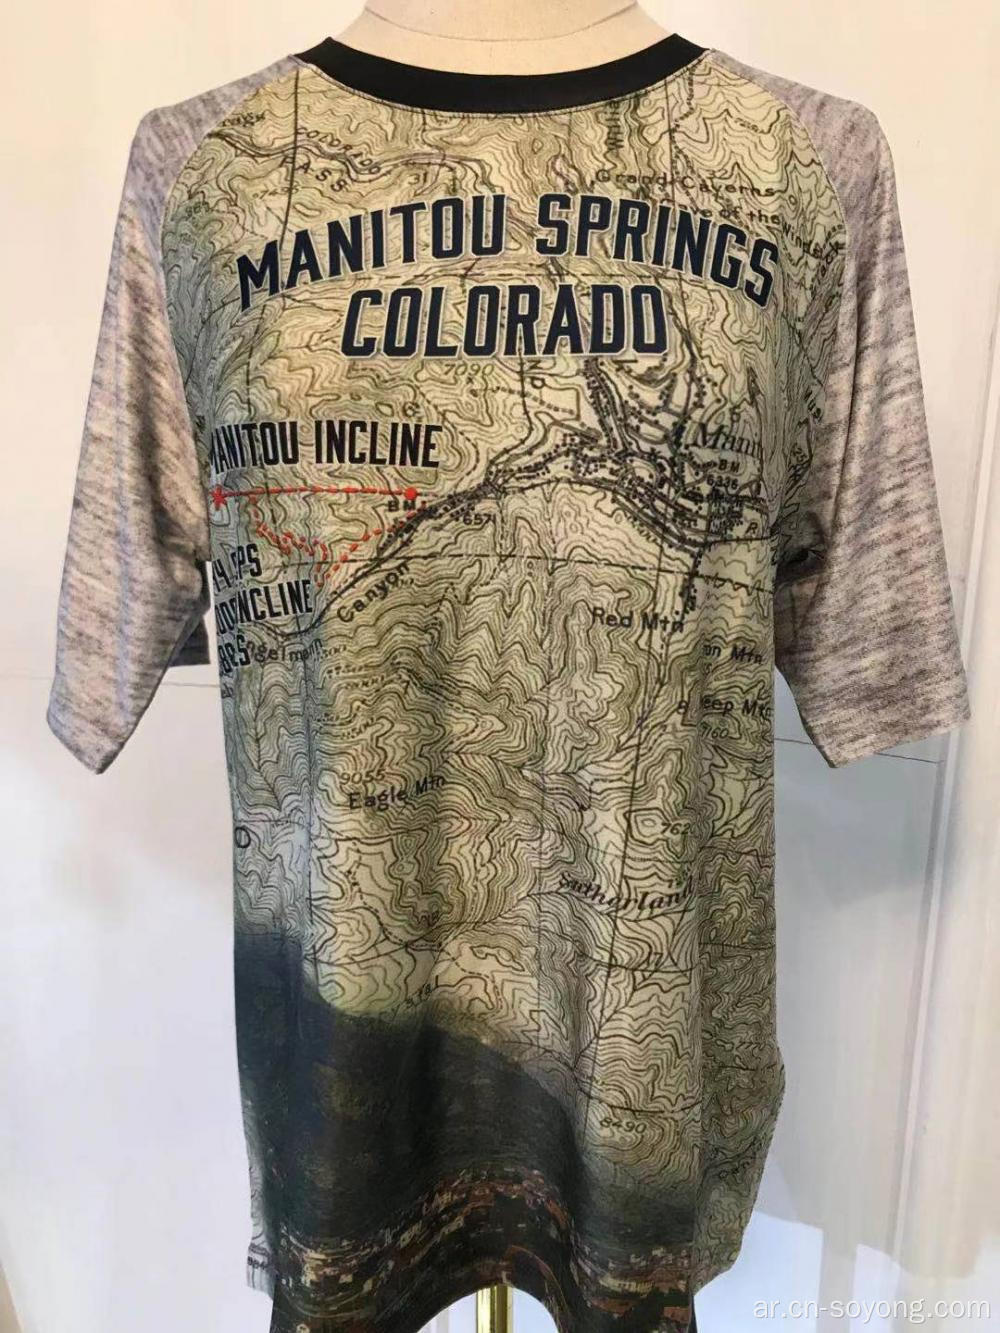 قمصان كولورادو مانيتو سبرينغز مانيتو إنكلاين للرجال